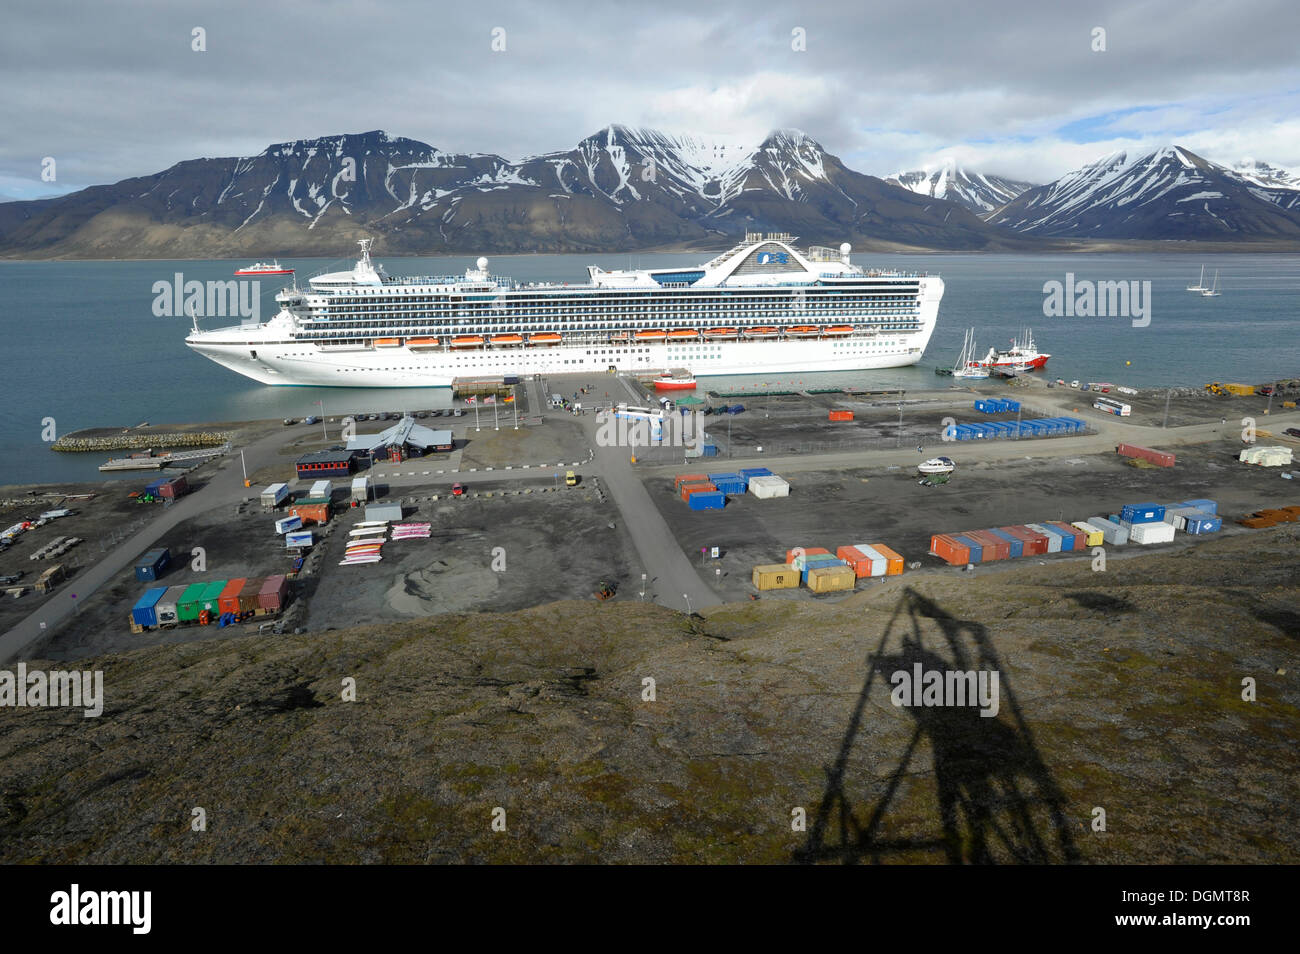 Bateau de croisière, le Grand Princess de Princess Cruises, amarré dans le port de Longyearbyen, l'ombre d'un téléphérique à charbon historique Banque D'Images